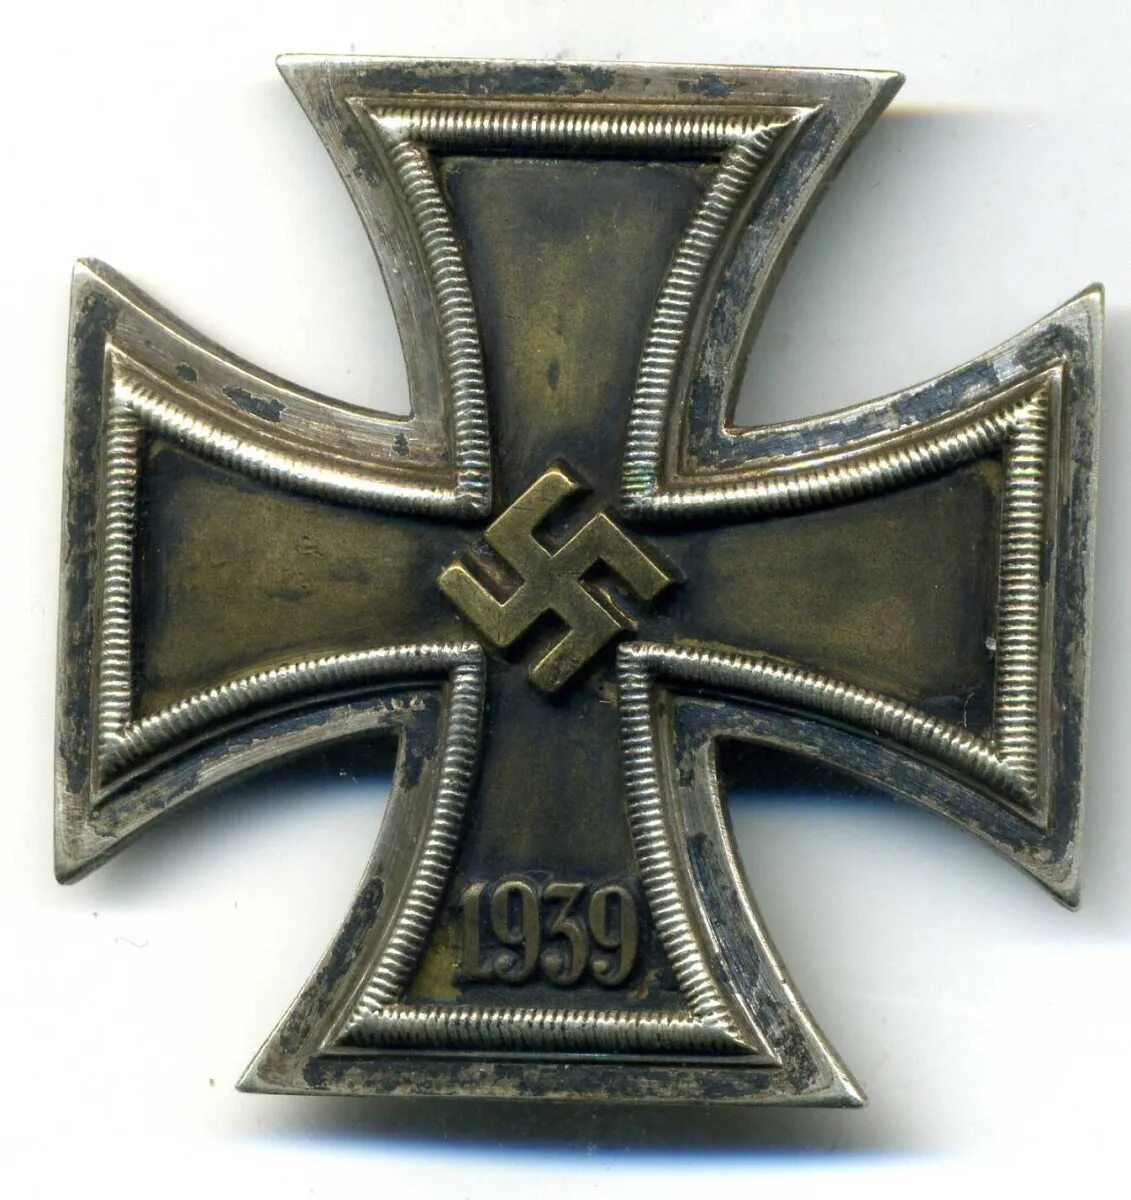 Св сс. Орден крест 3 Рейх. Медали нацистской Германии. Награды вермахта и СС 1939-1945. Награды СС третьего рейха.